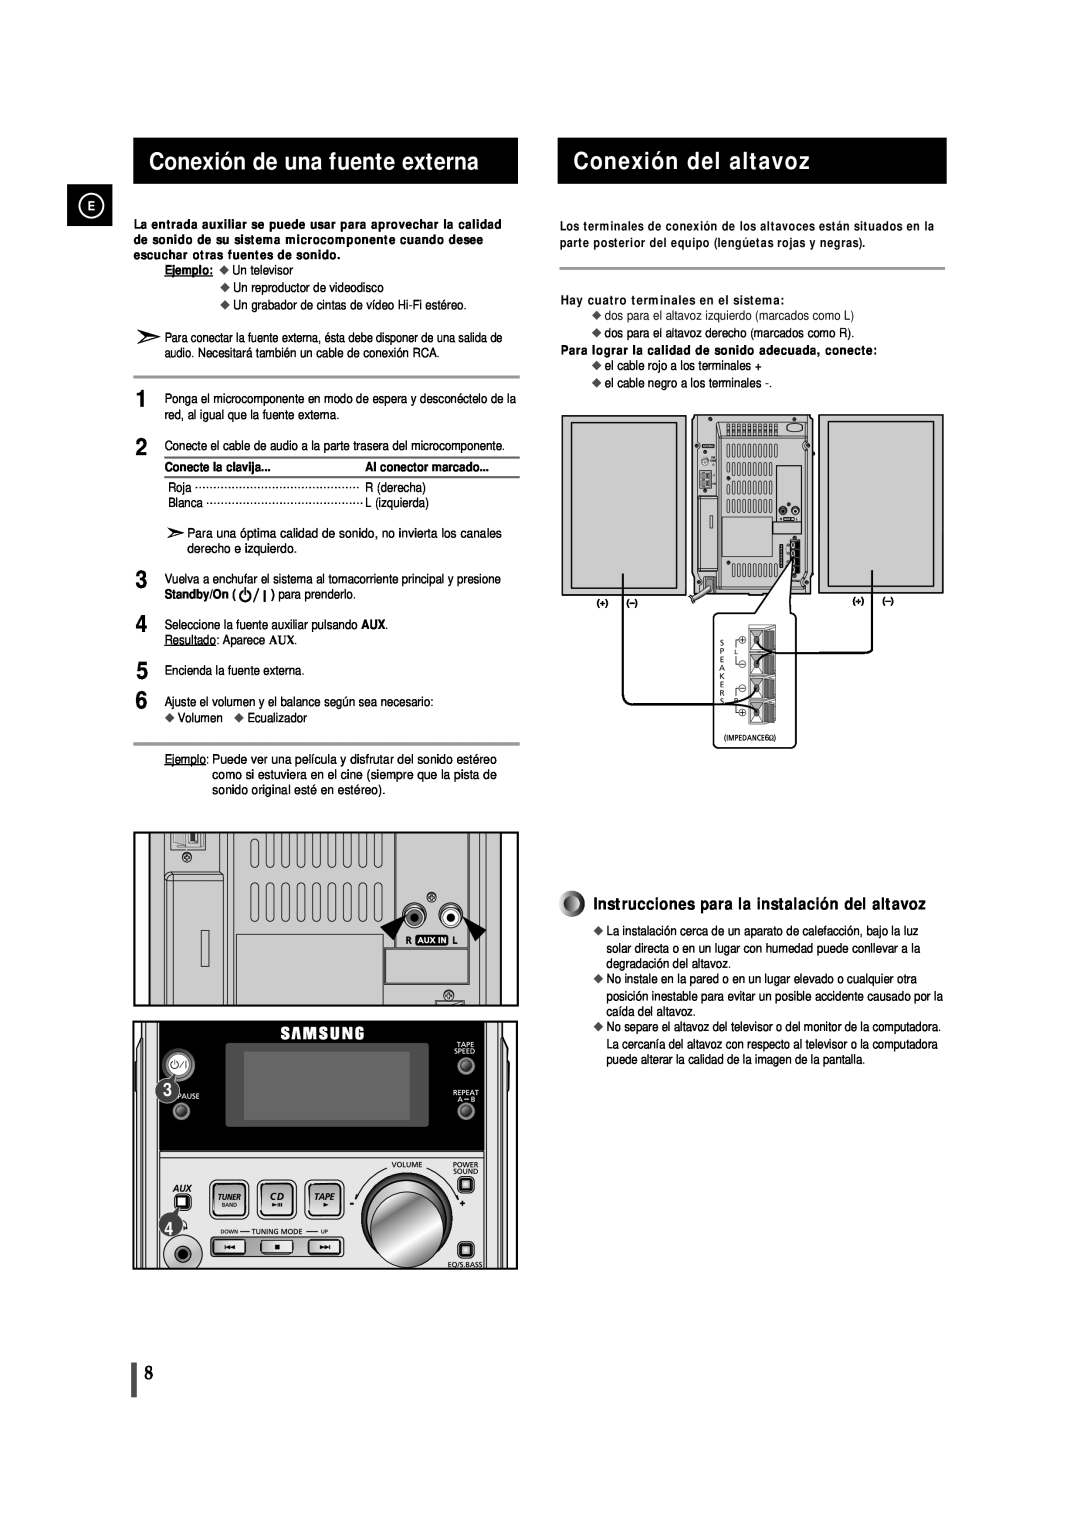 Samsung MM-J5 manual Conexión de una fuente externa, Conexión del altavoz, Instrucciones para la instalación del altavoz 